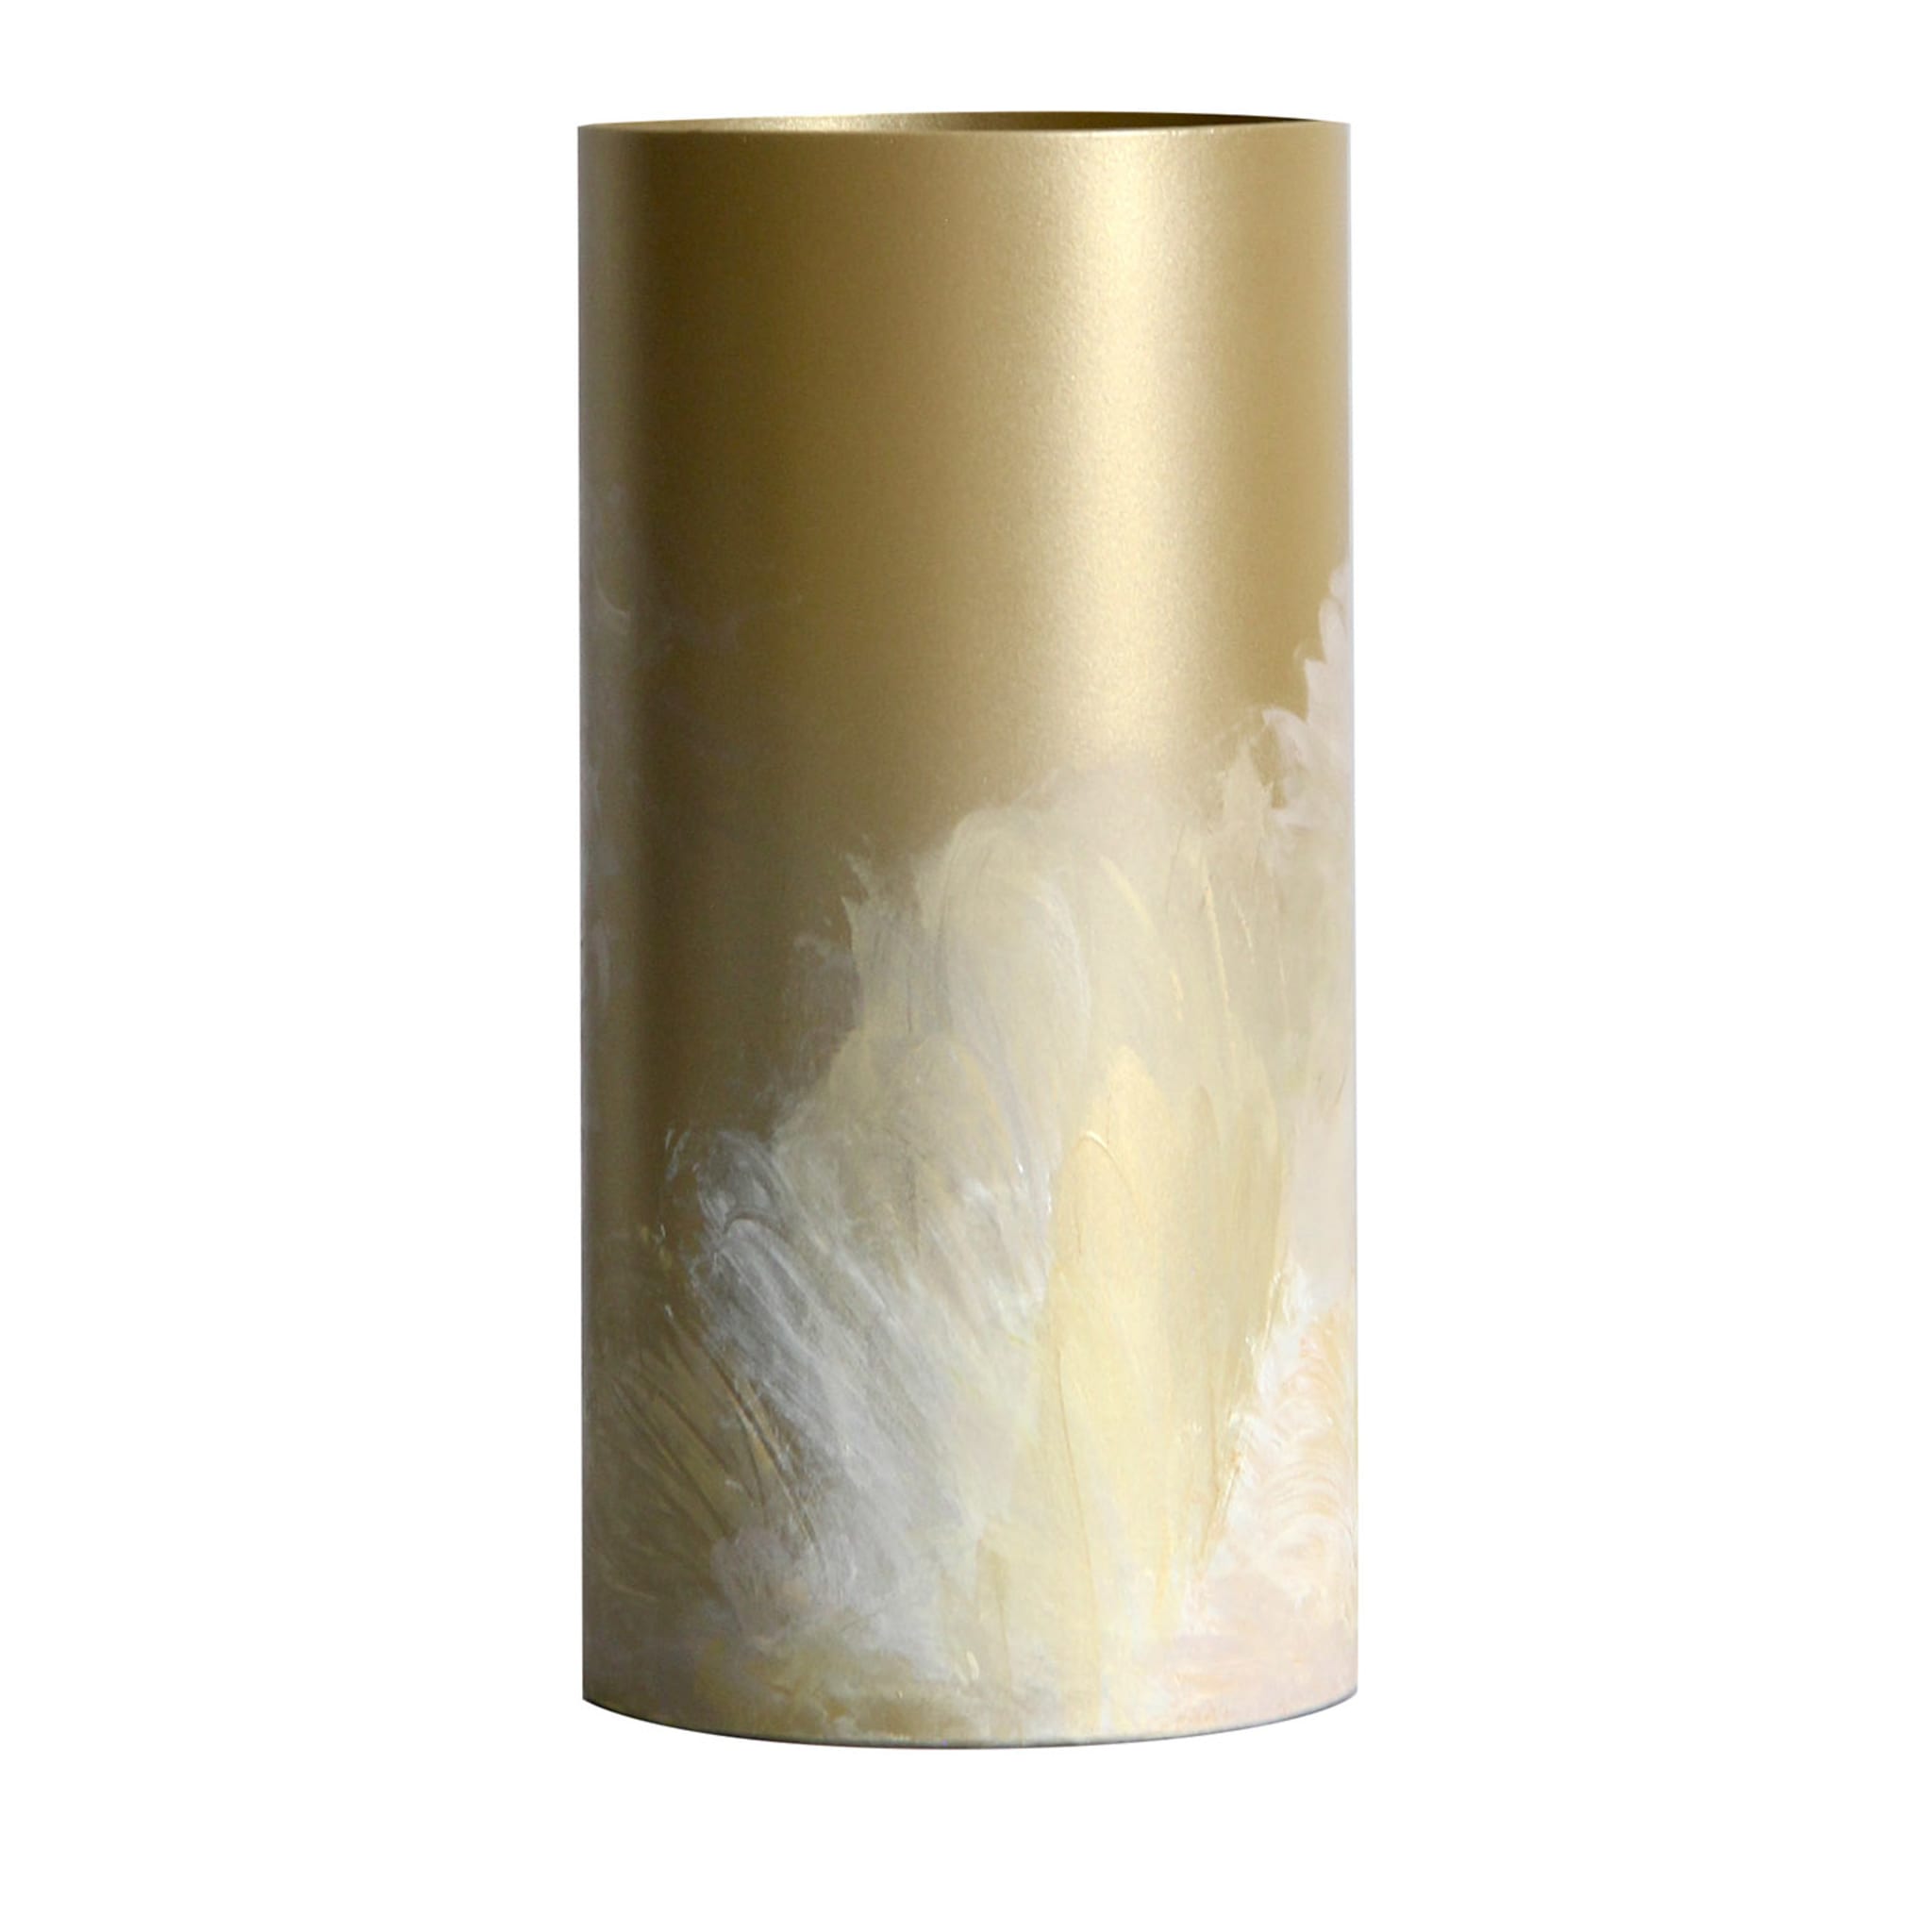 Flora M Vaso cilindrico dorato di Gabriela Azar Rubagotti #3 - Vista principale